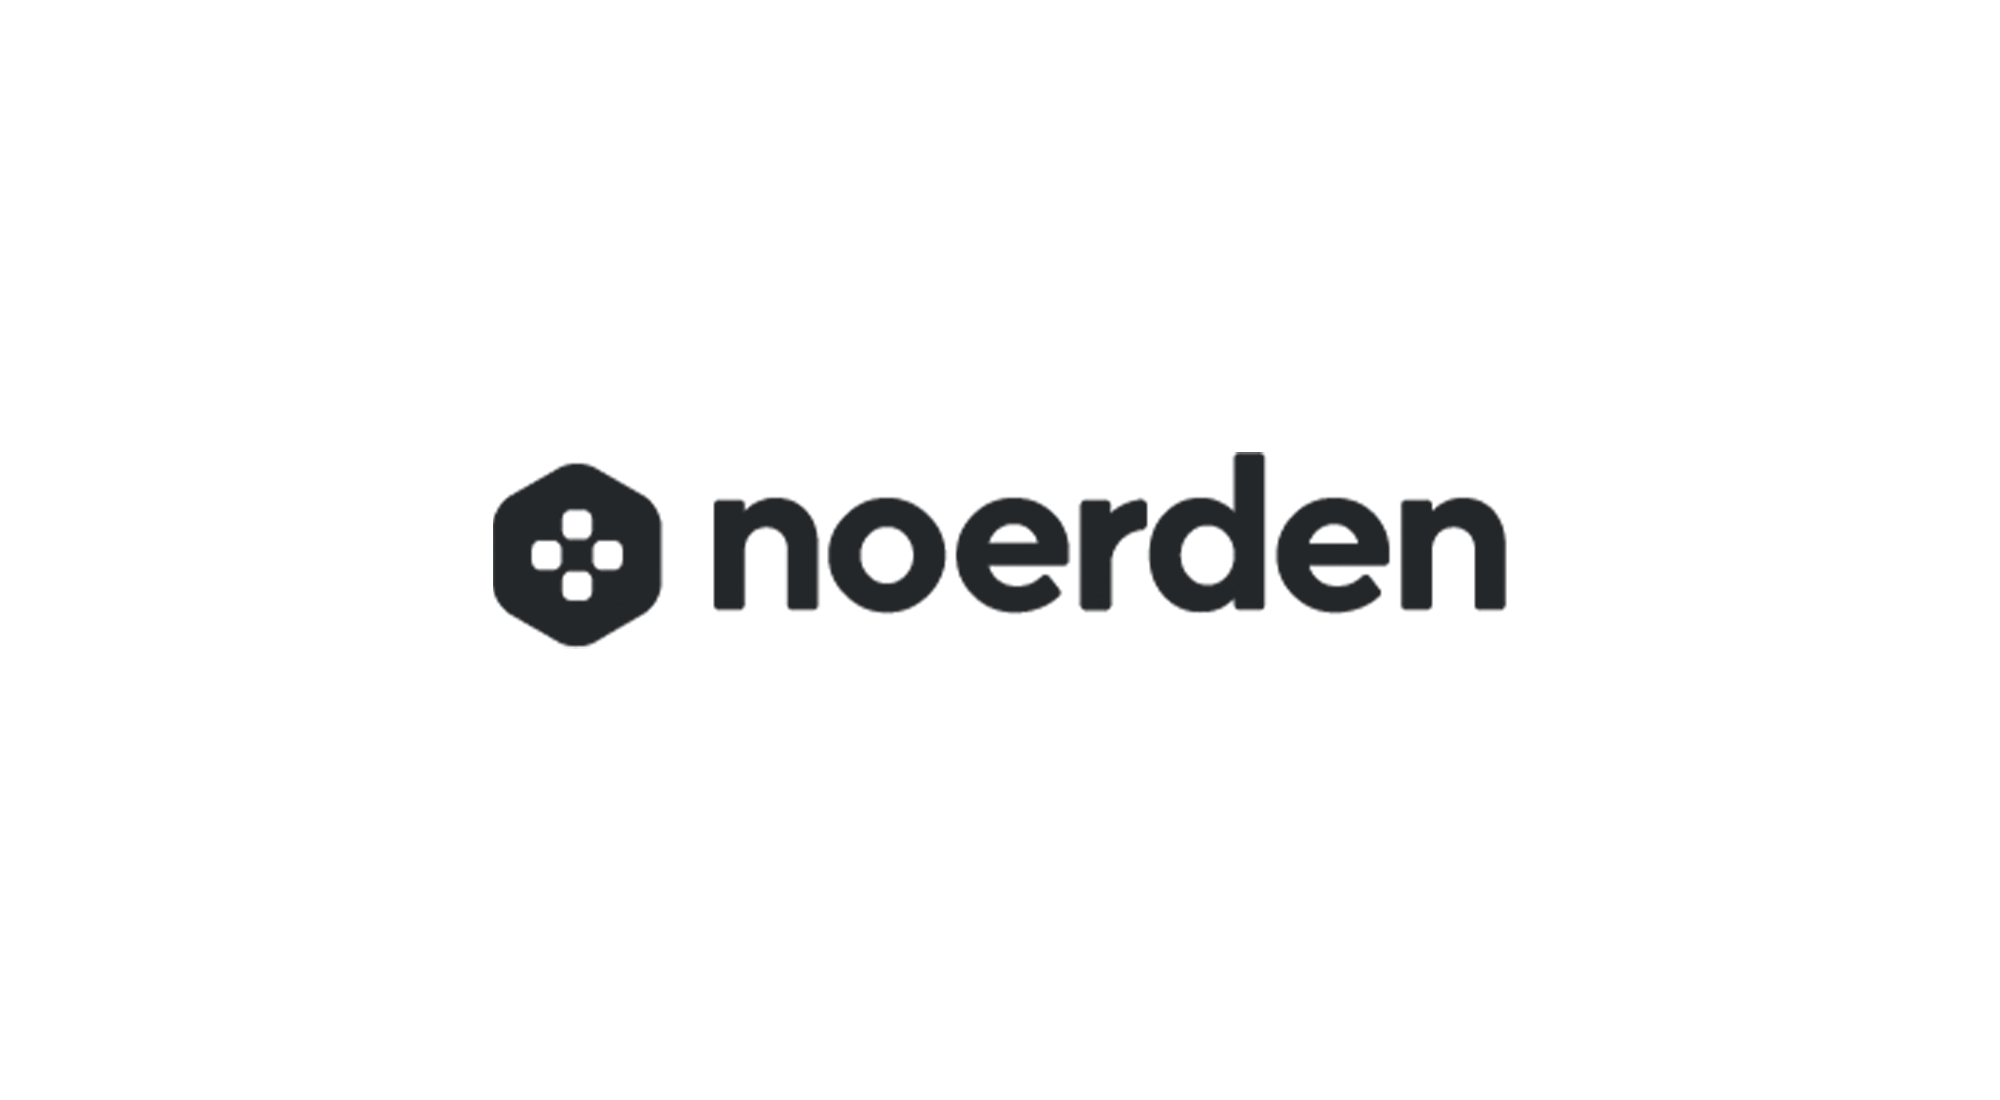 NOERDEN: New Logo For The Brand!